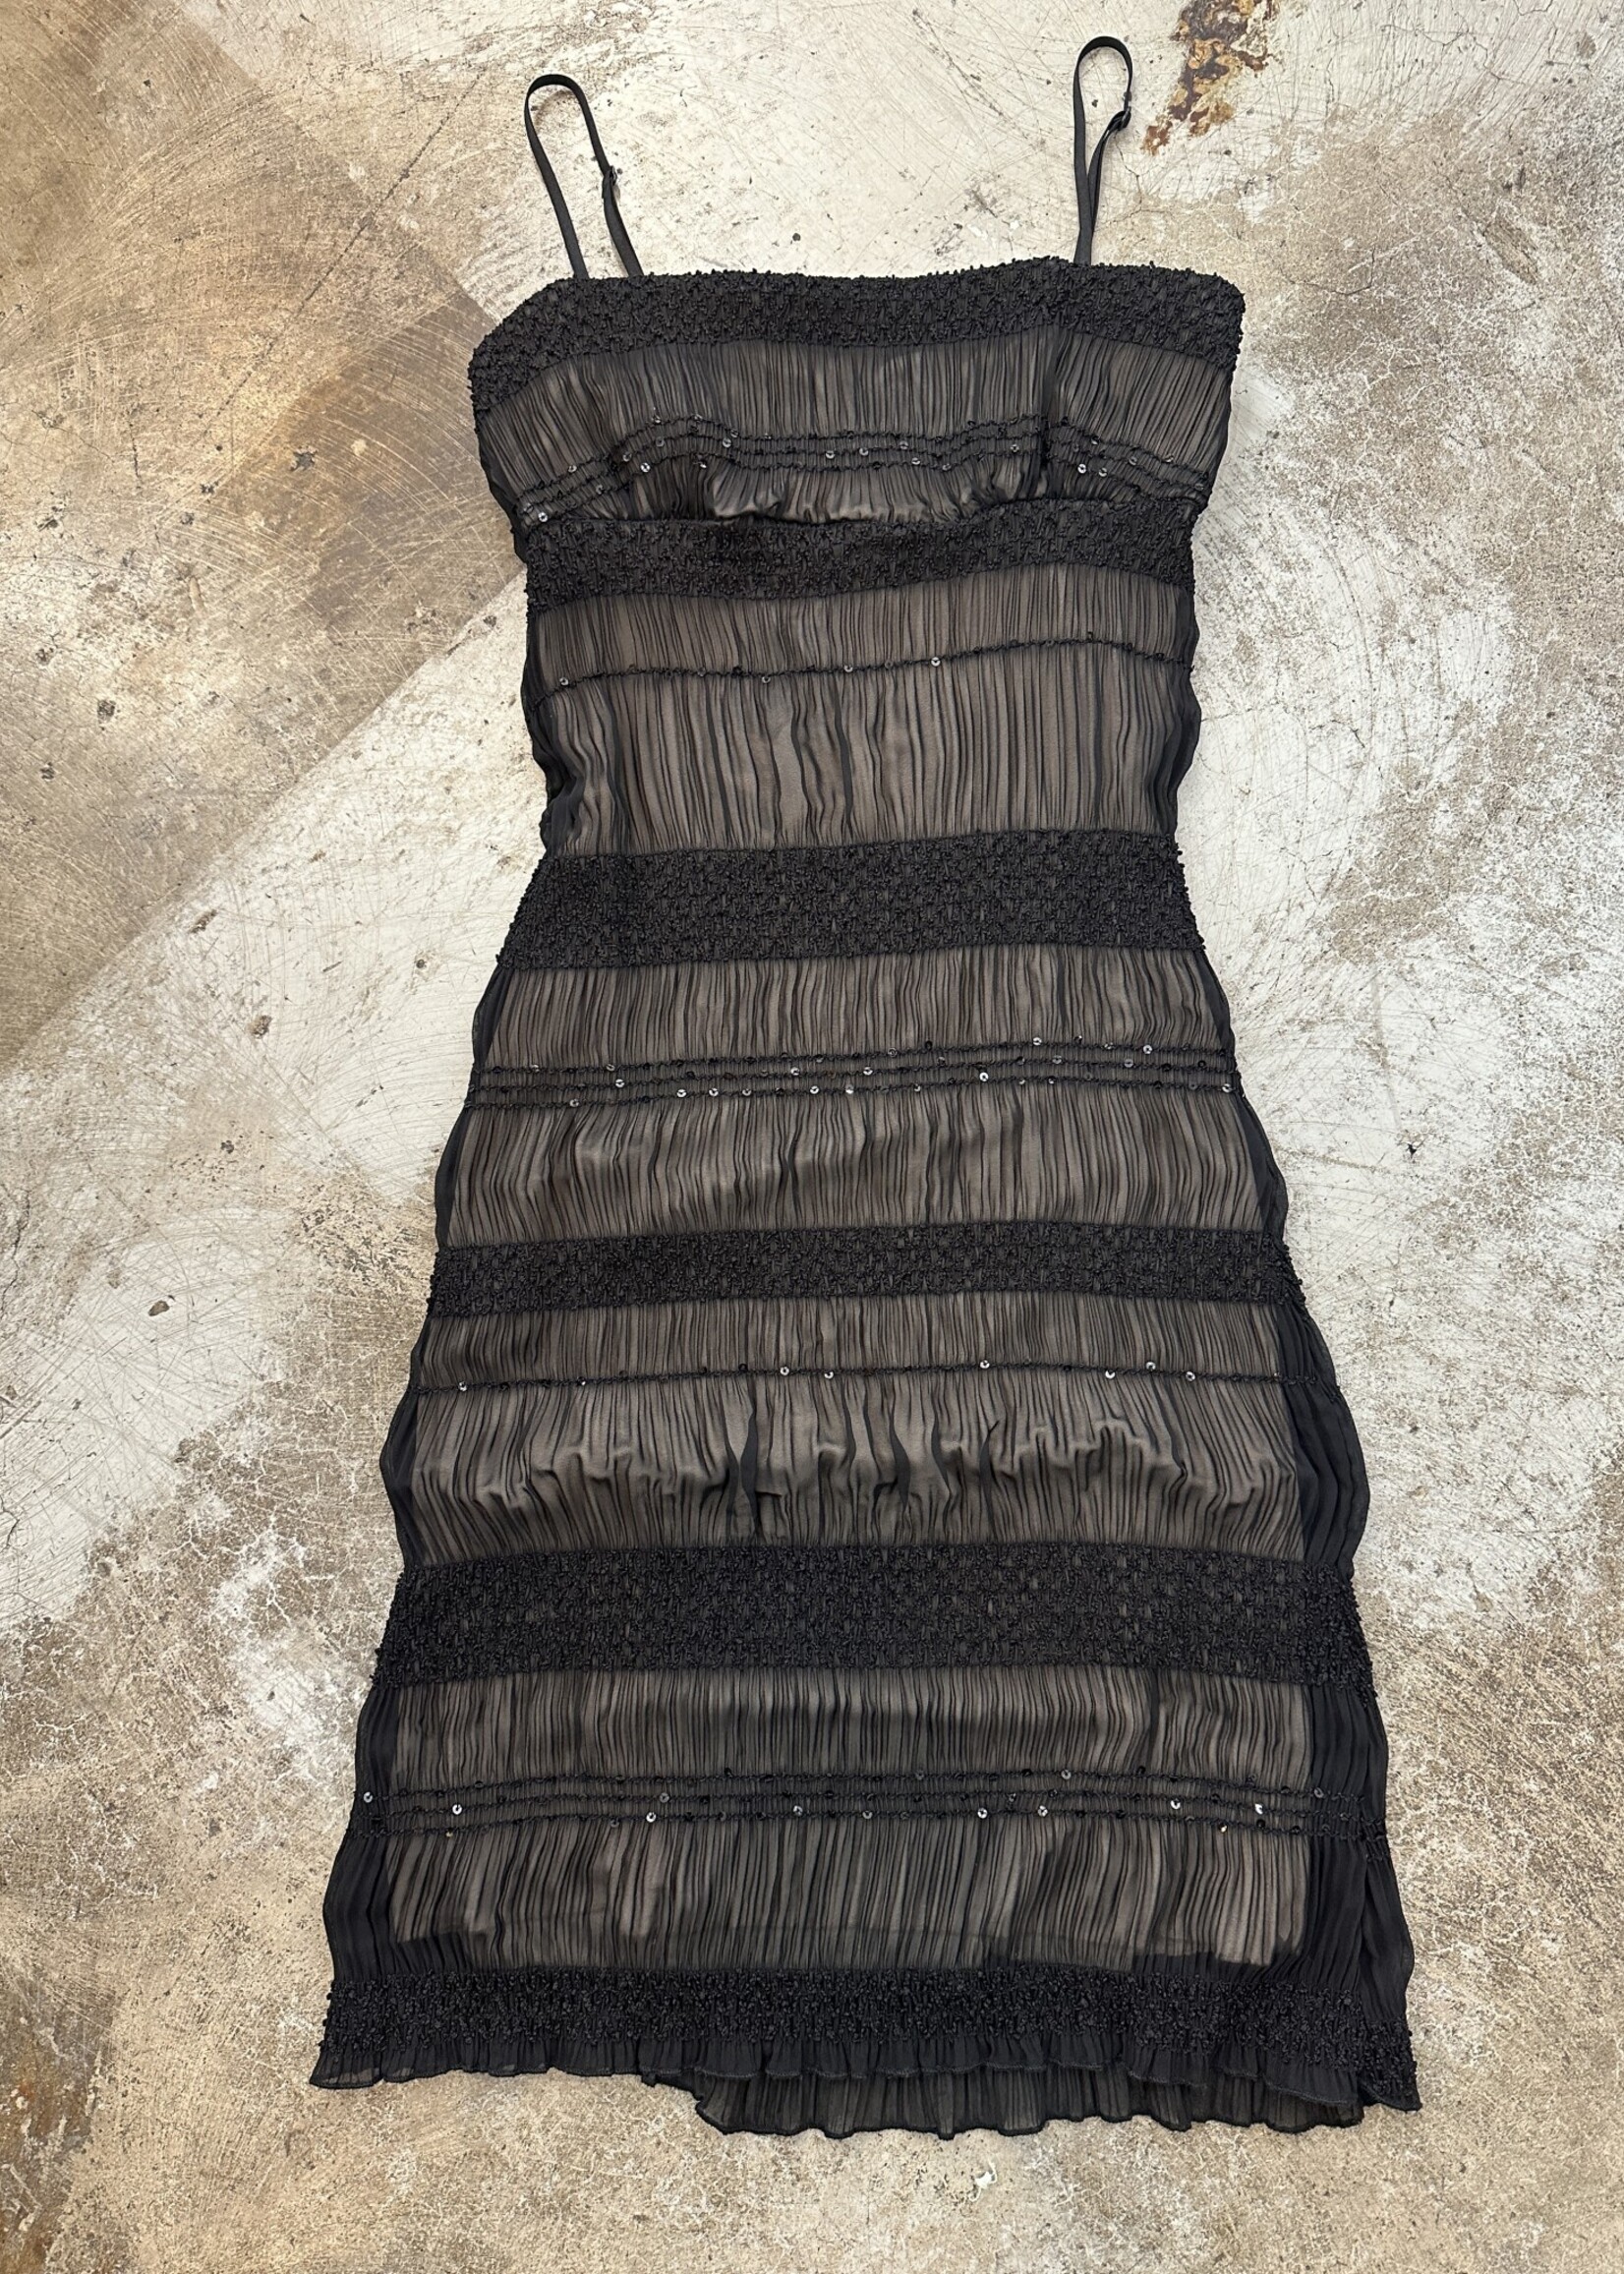 NP Y2K Black Sequin Dress S